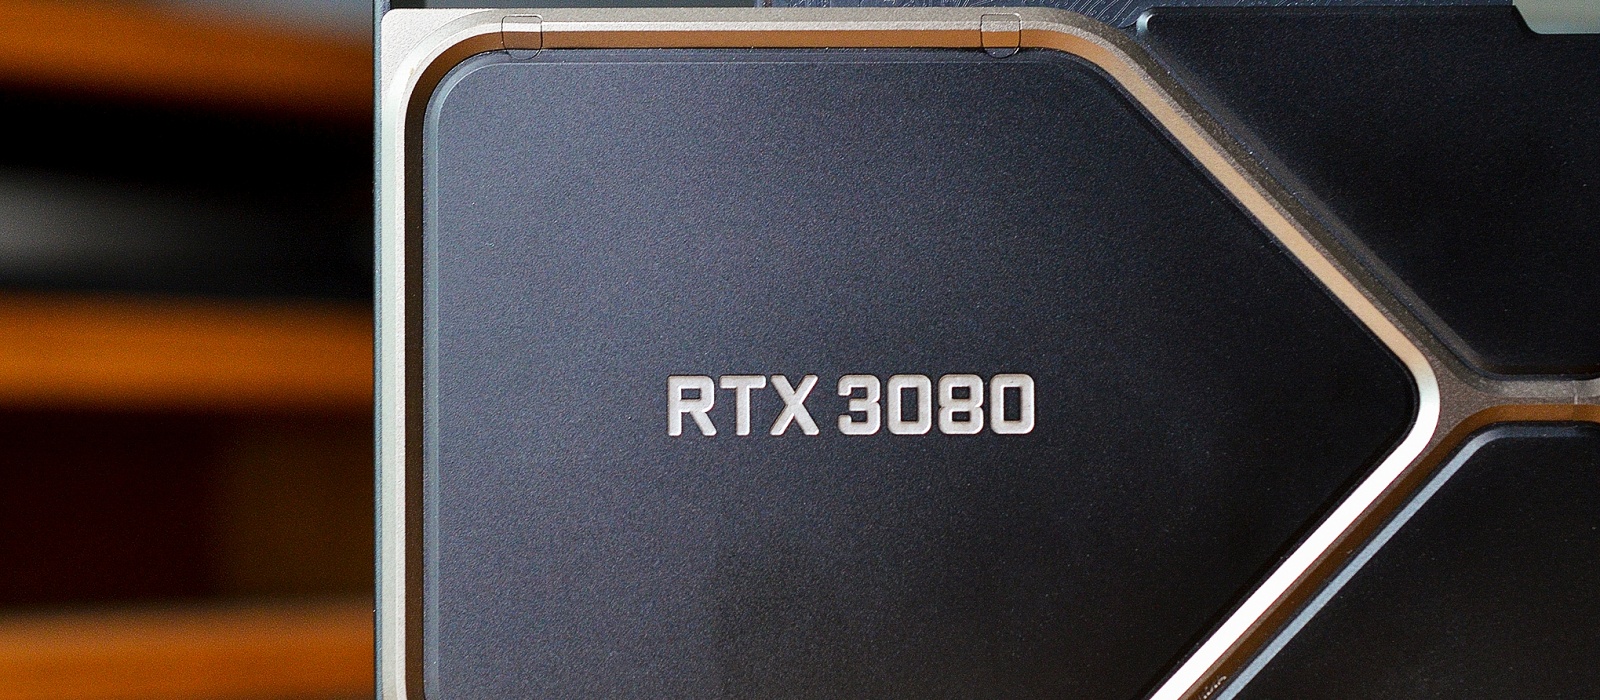 Вышли первые обзоры NVIDIA GeForce RTX 3080. Видеокарта намного мощнее RTX 2080